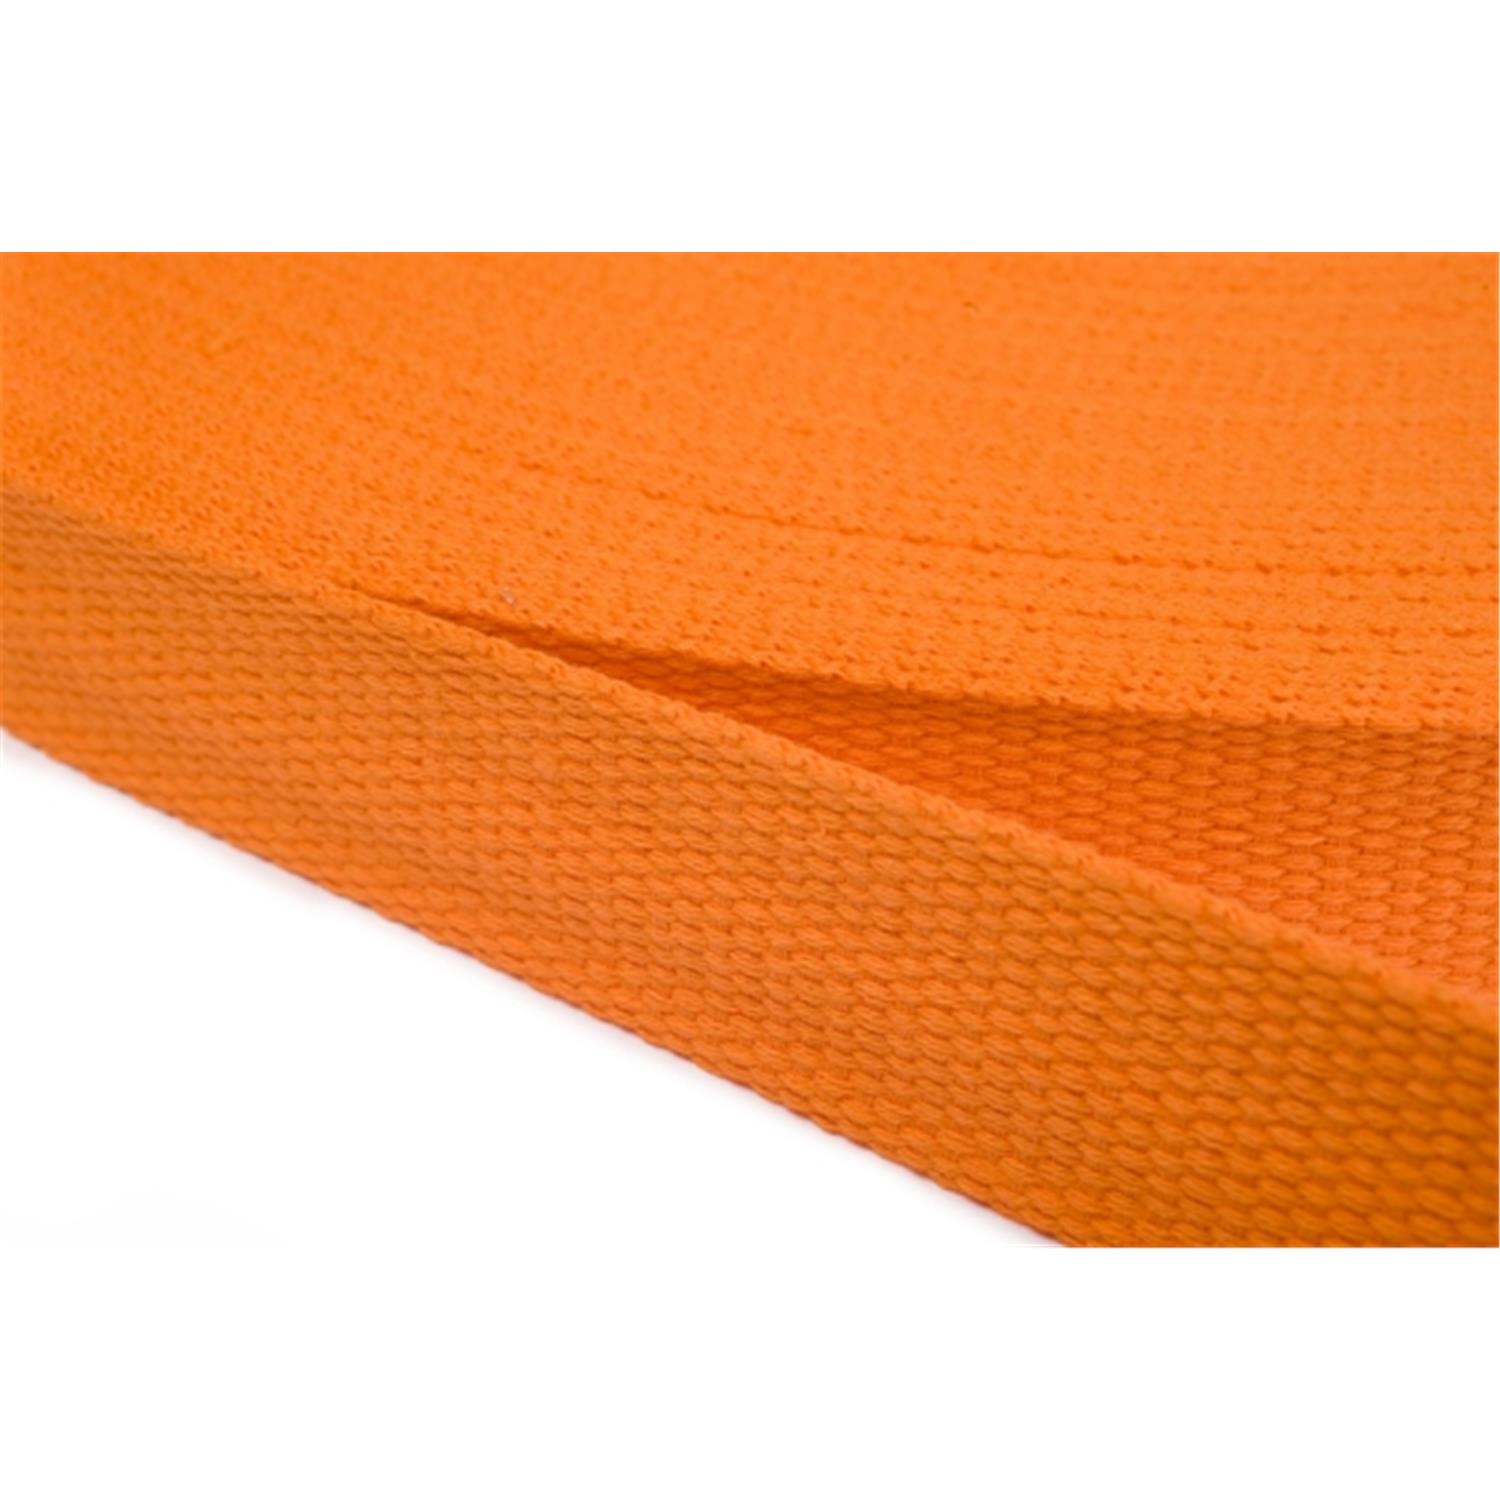 Gurtband aus Baumwolle 25mm in 20 Farben 06 - orange 6 Meter